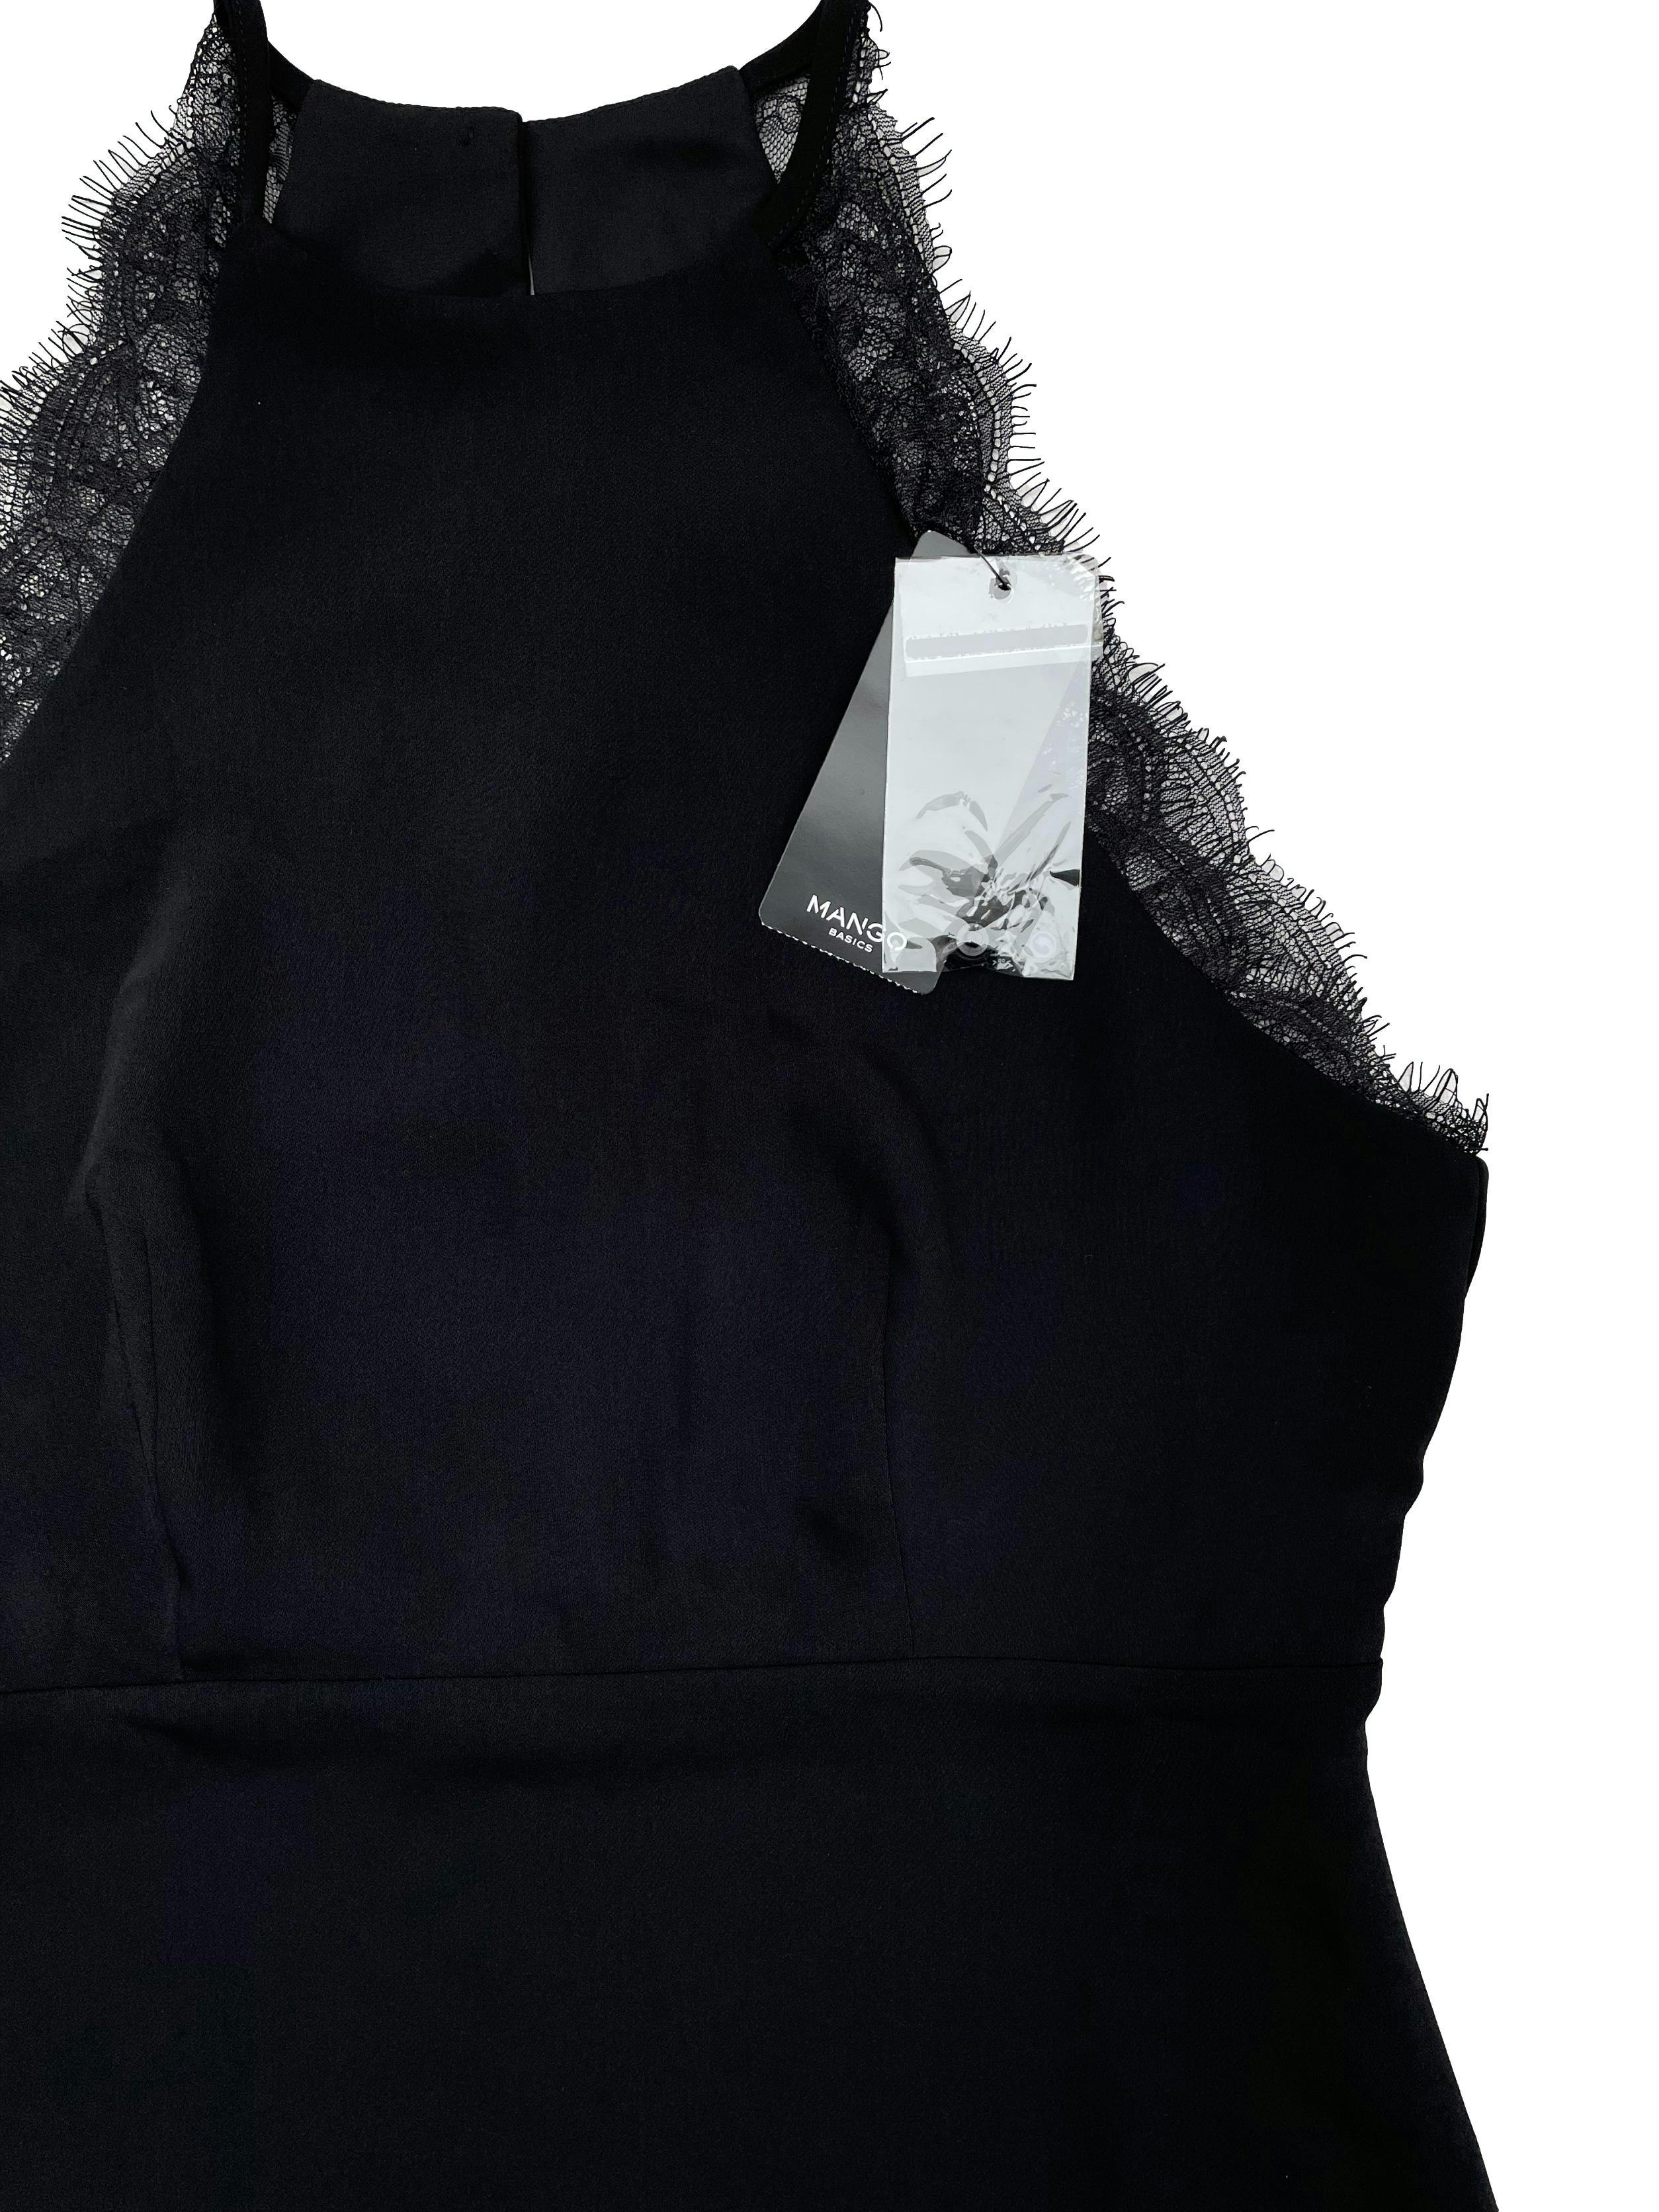 Vestido negro Mango de gasa con forro, cuello halter con encaje, corte en cintura, botones y cierre en espalda. Nuevo con etiqueta, precio original S/250. Busto 90cm, Largo 95cm.